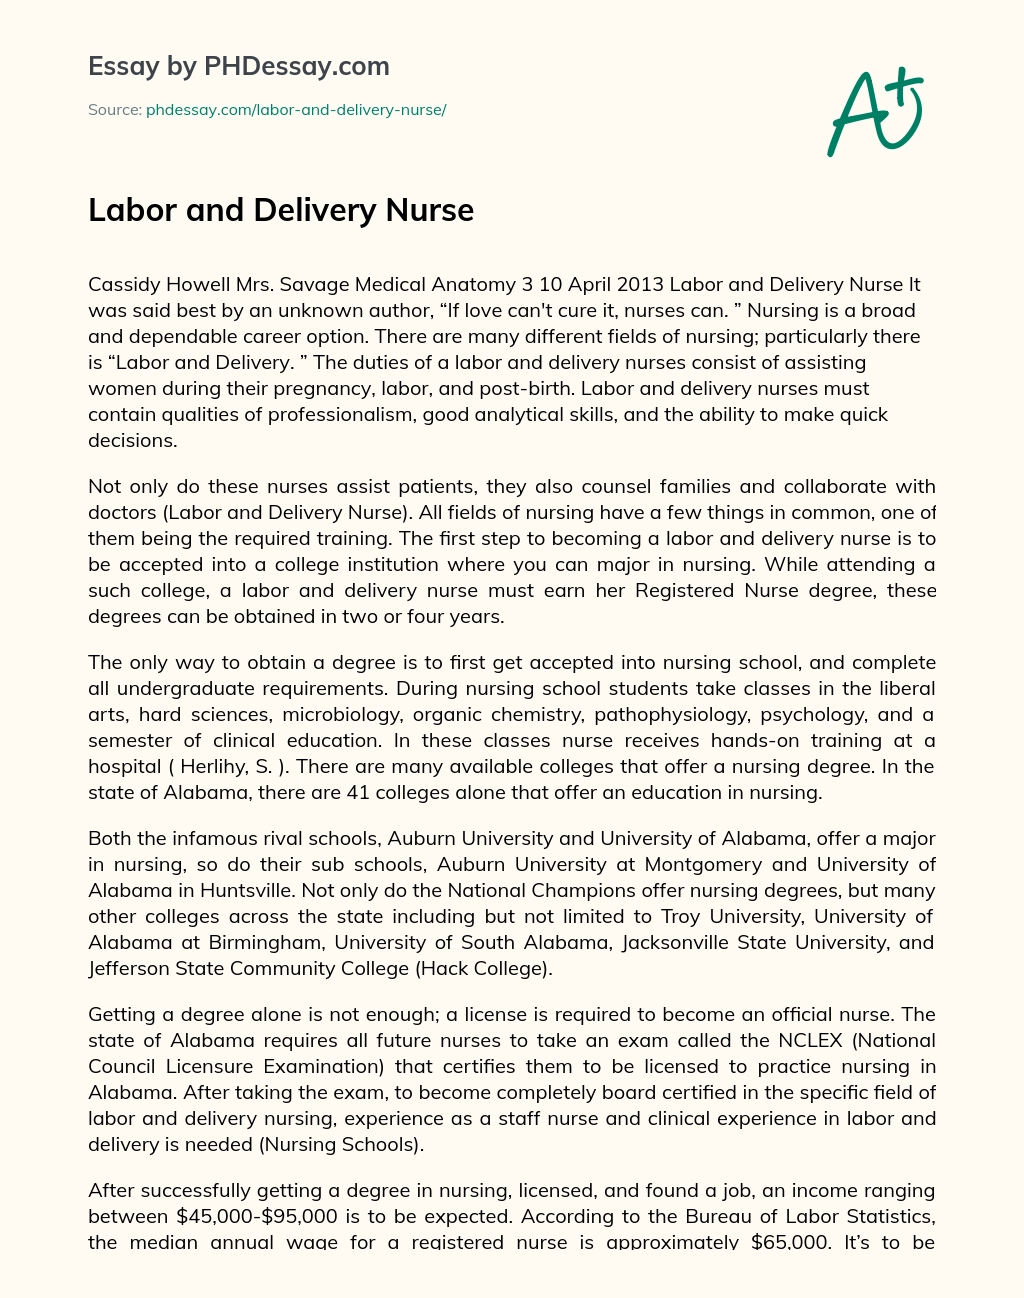 Labor and Delivery Nurse essay